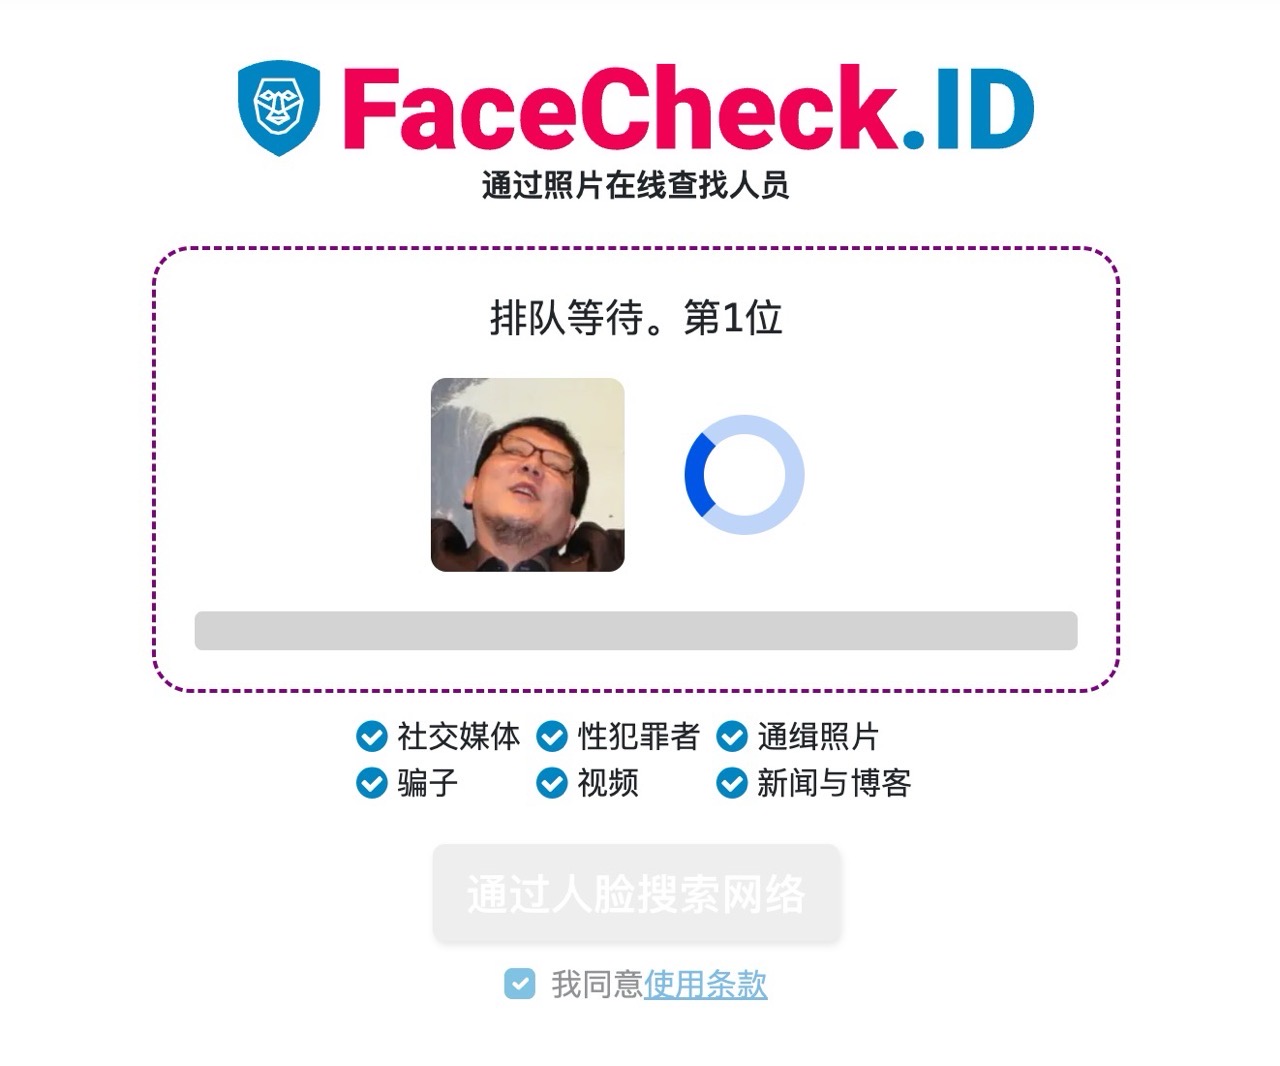 FaceCheck